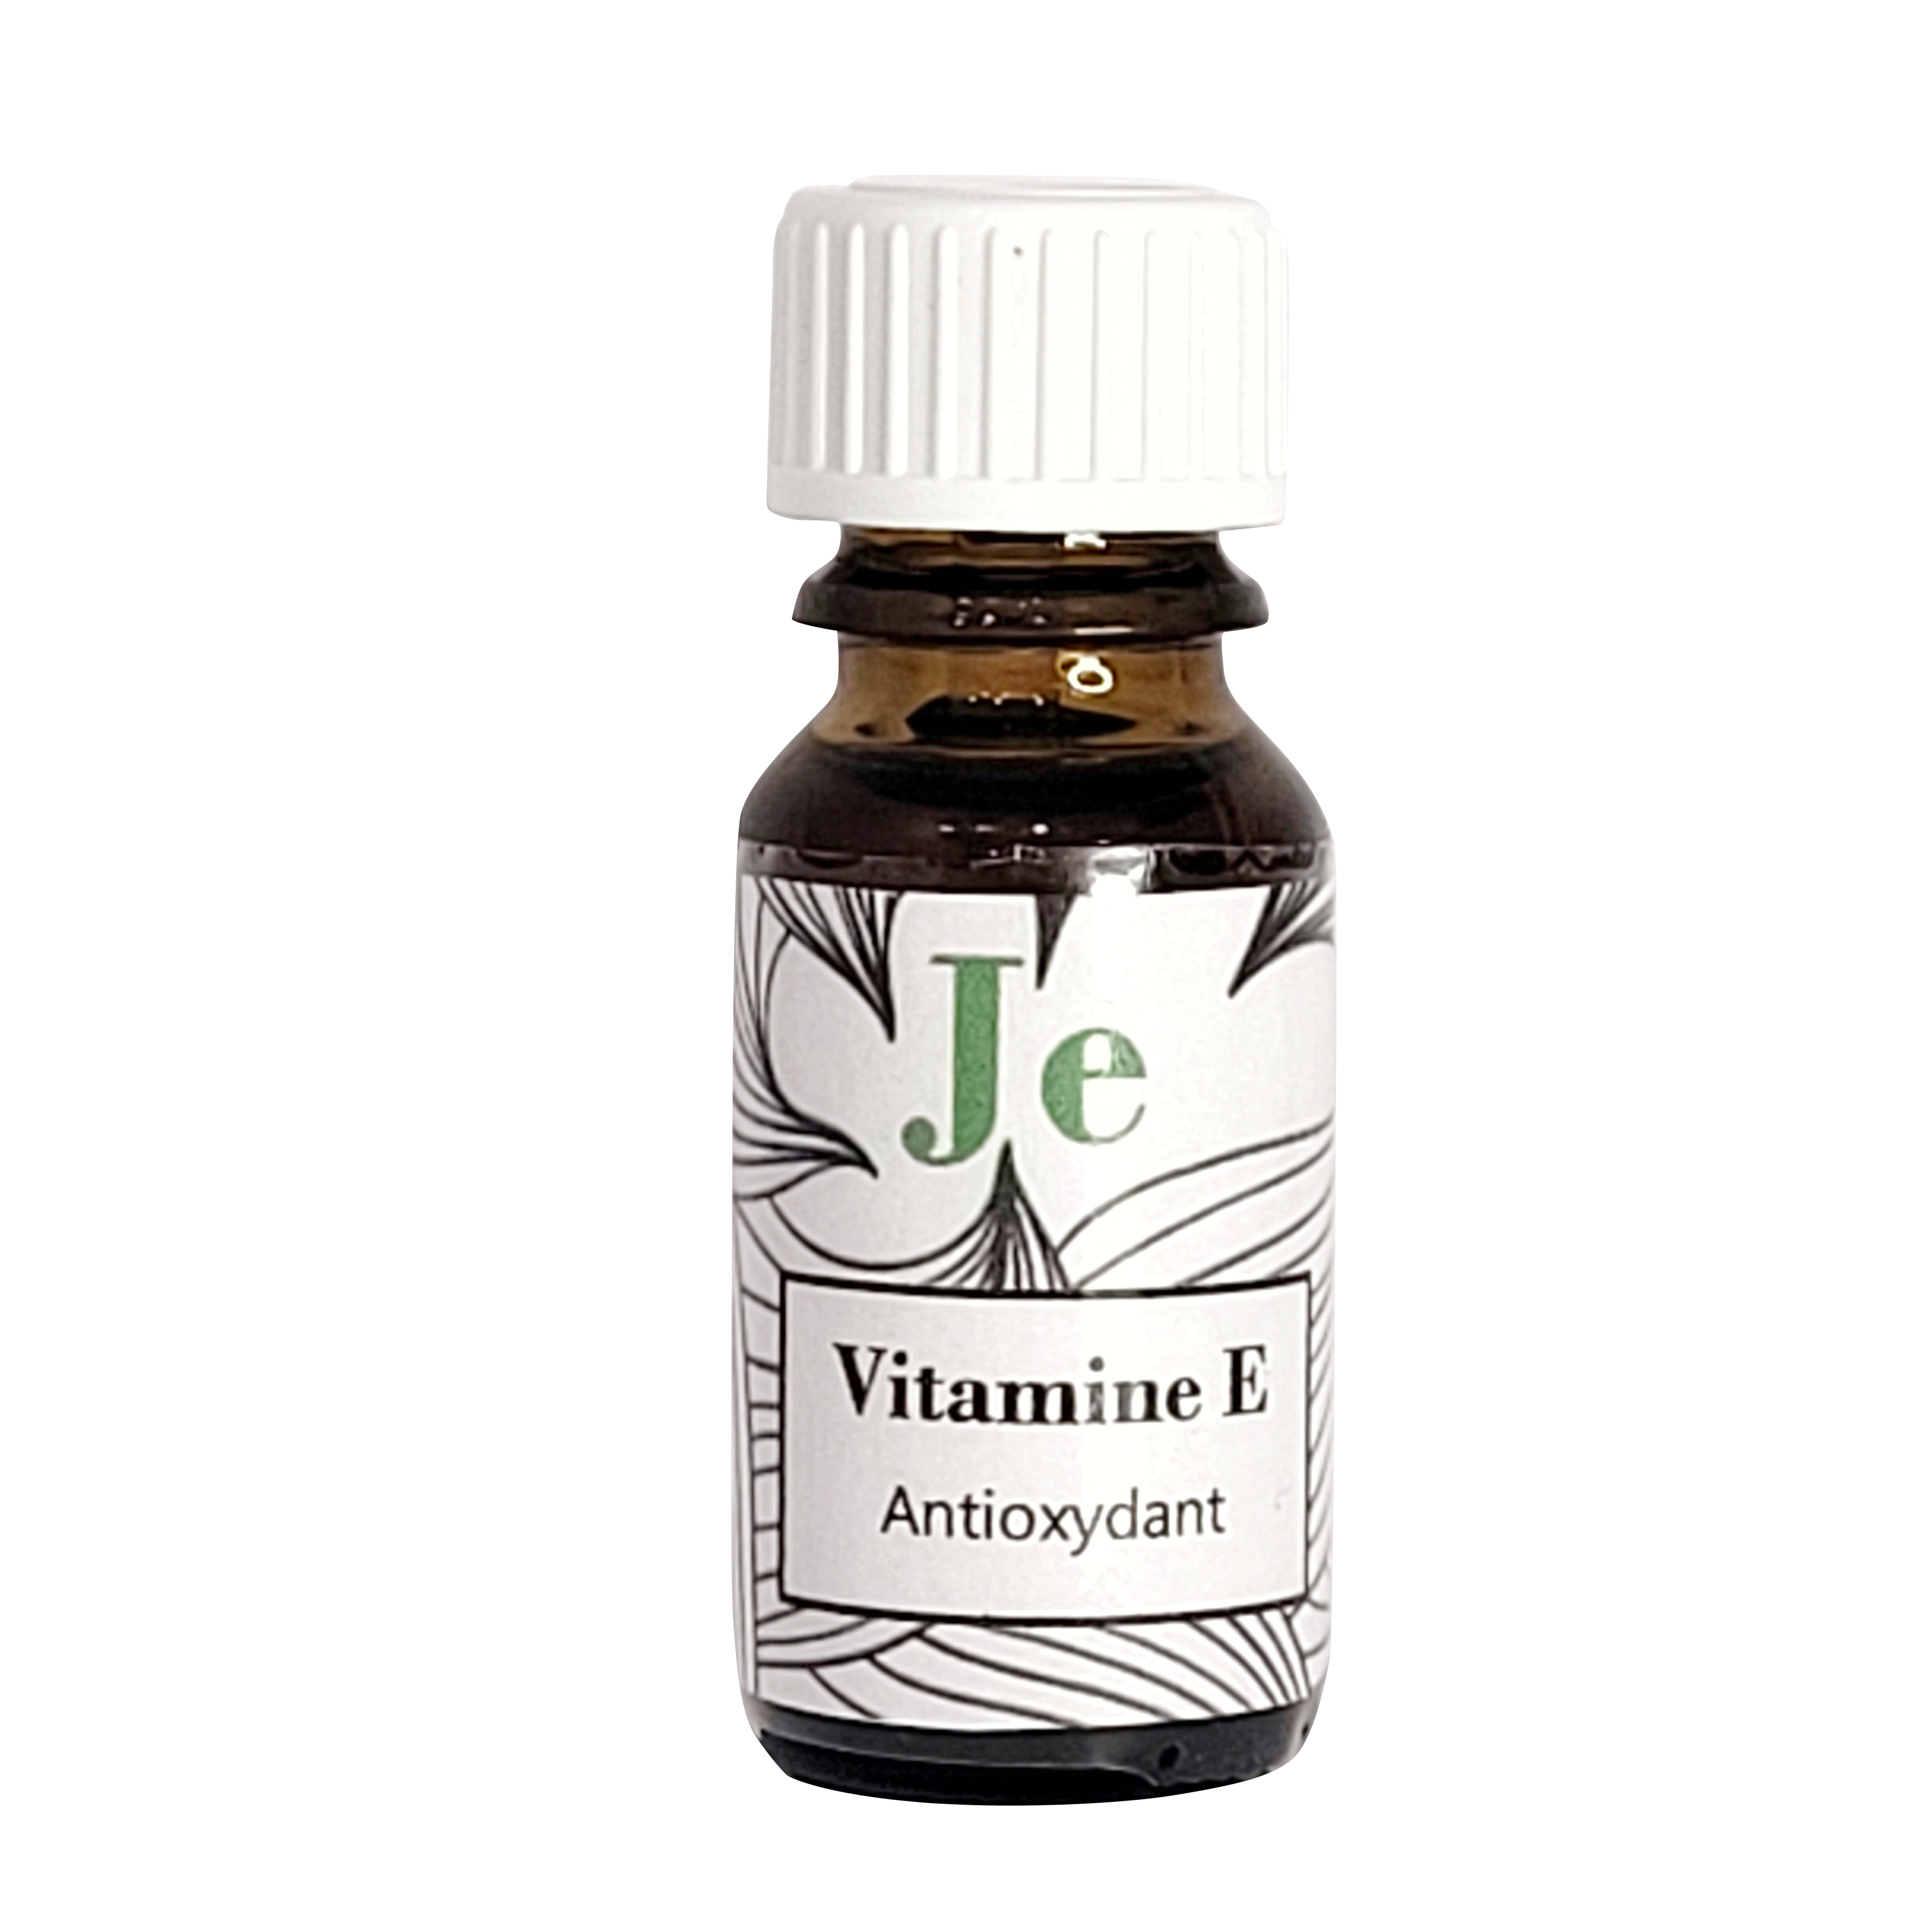 vitamineE